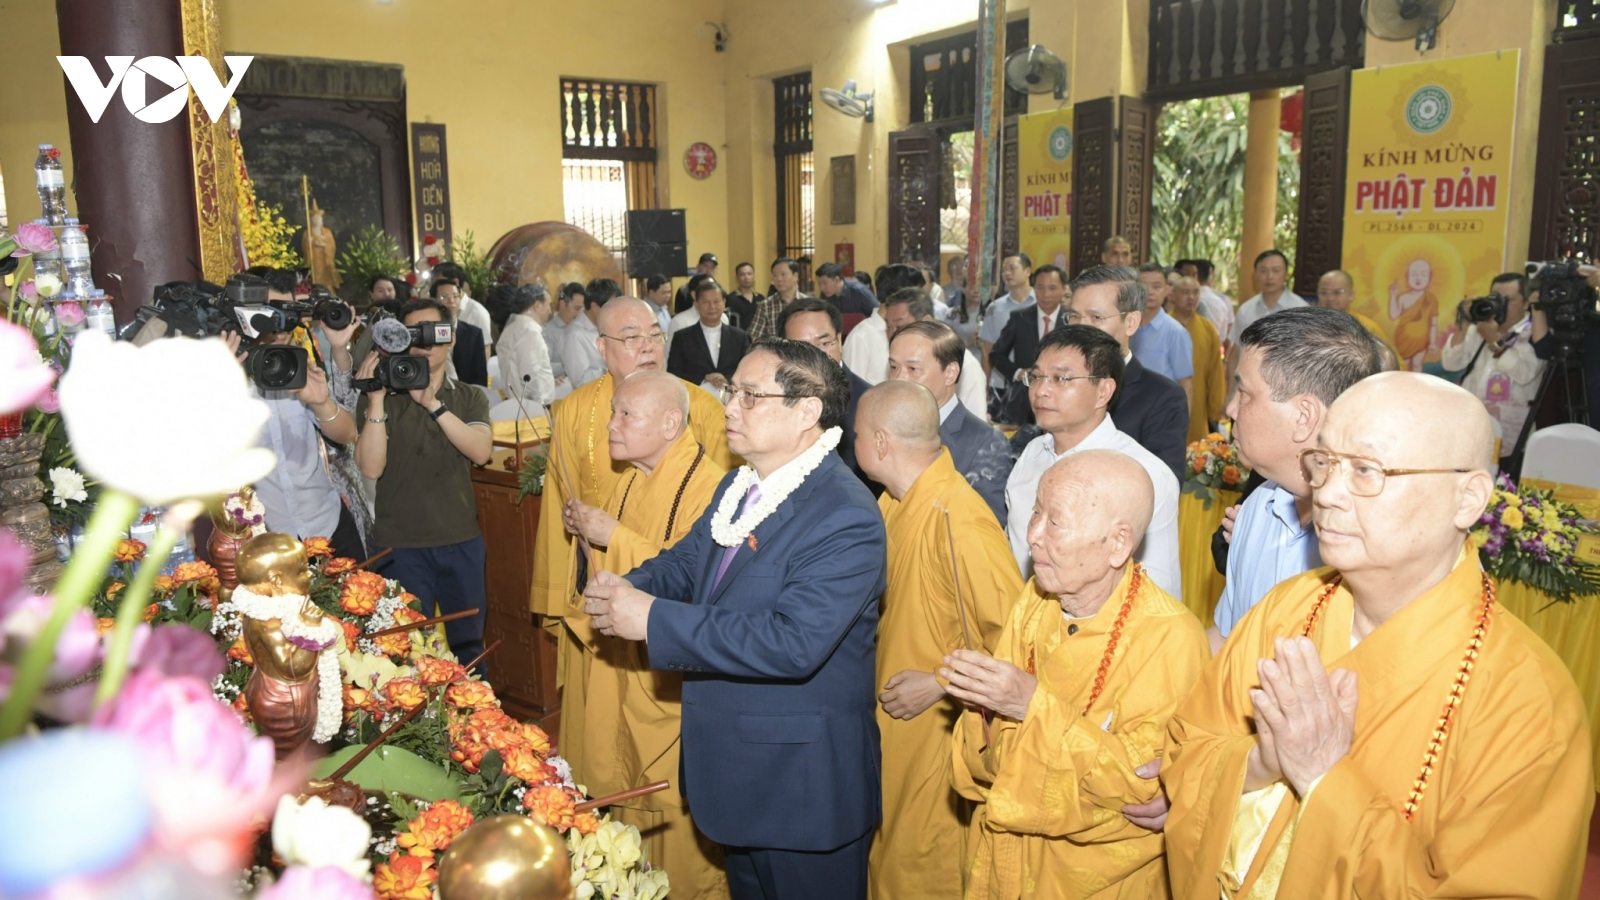 Thủ tướng dự Đại lễ Phật đản Phật lịch 2568 tại chùa Quán Sứ, Hà Nội